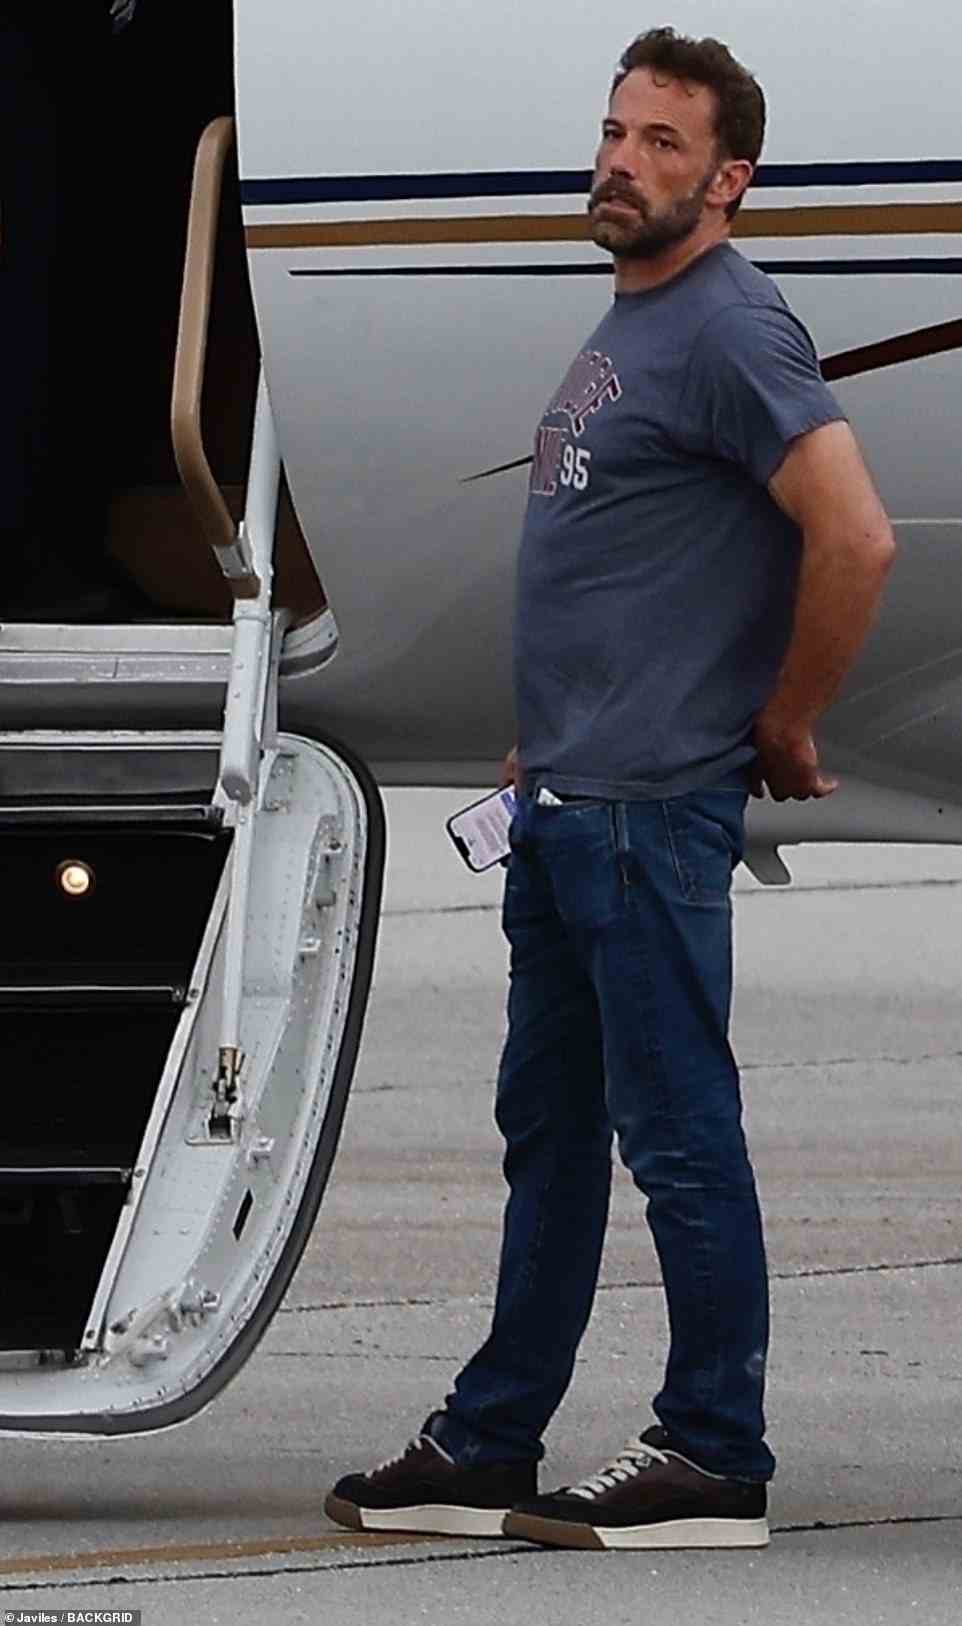 Affleck, 50, war am Sonntag lässig gekleidet, trug ein dunkelblaues T-Shirt und Jeans und lief in einem Paar hohen schwarz-weißen Turnschuhen, als er sich darauf vorbereitete, in einen Privatjet einzusteigen